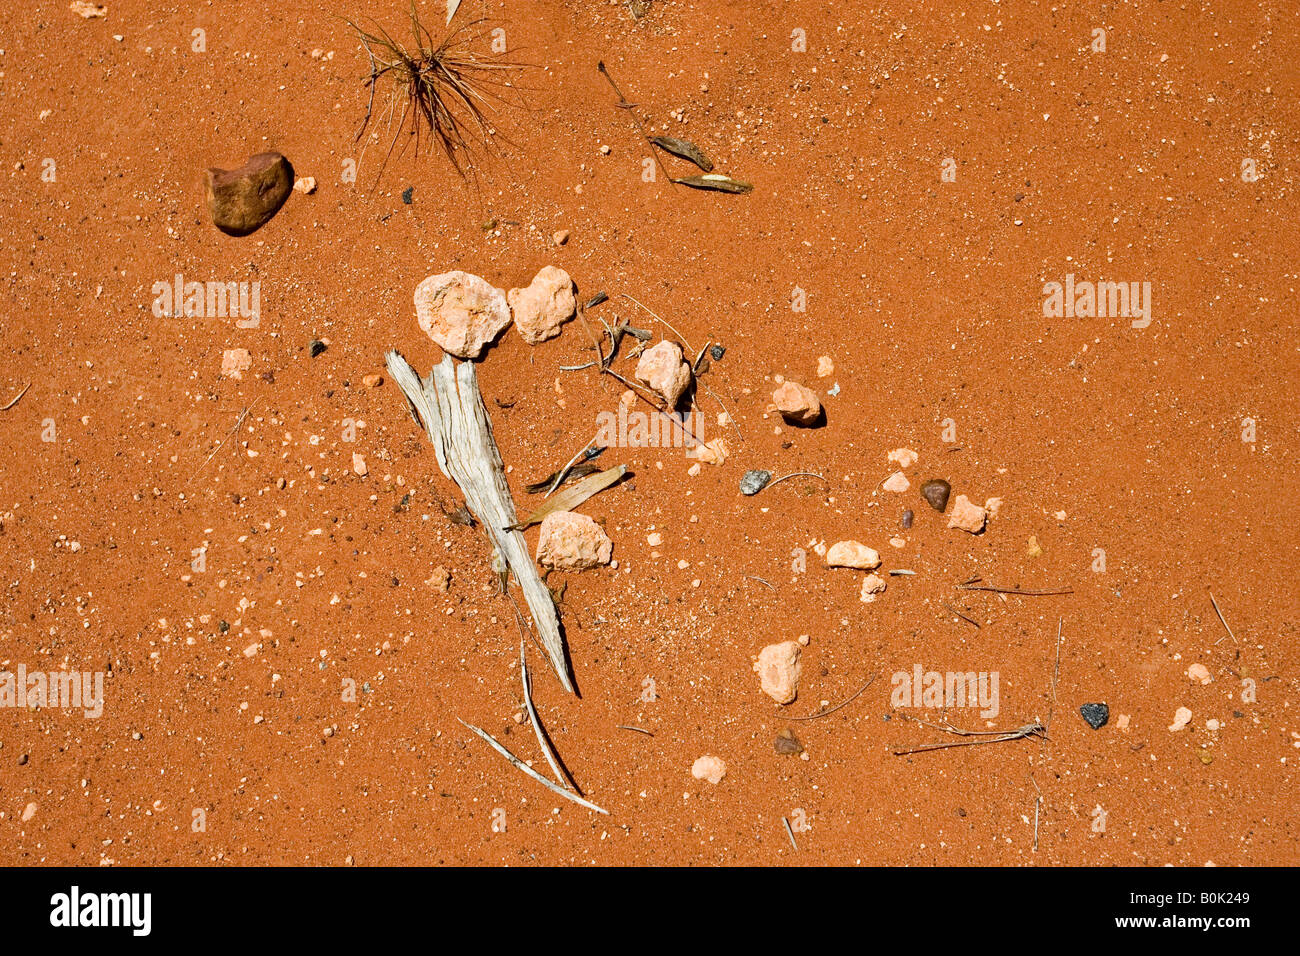 Steinen, Rinde und Blätter in Schmutz an King s Canyon Northern Territory Australien Stockfoto